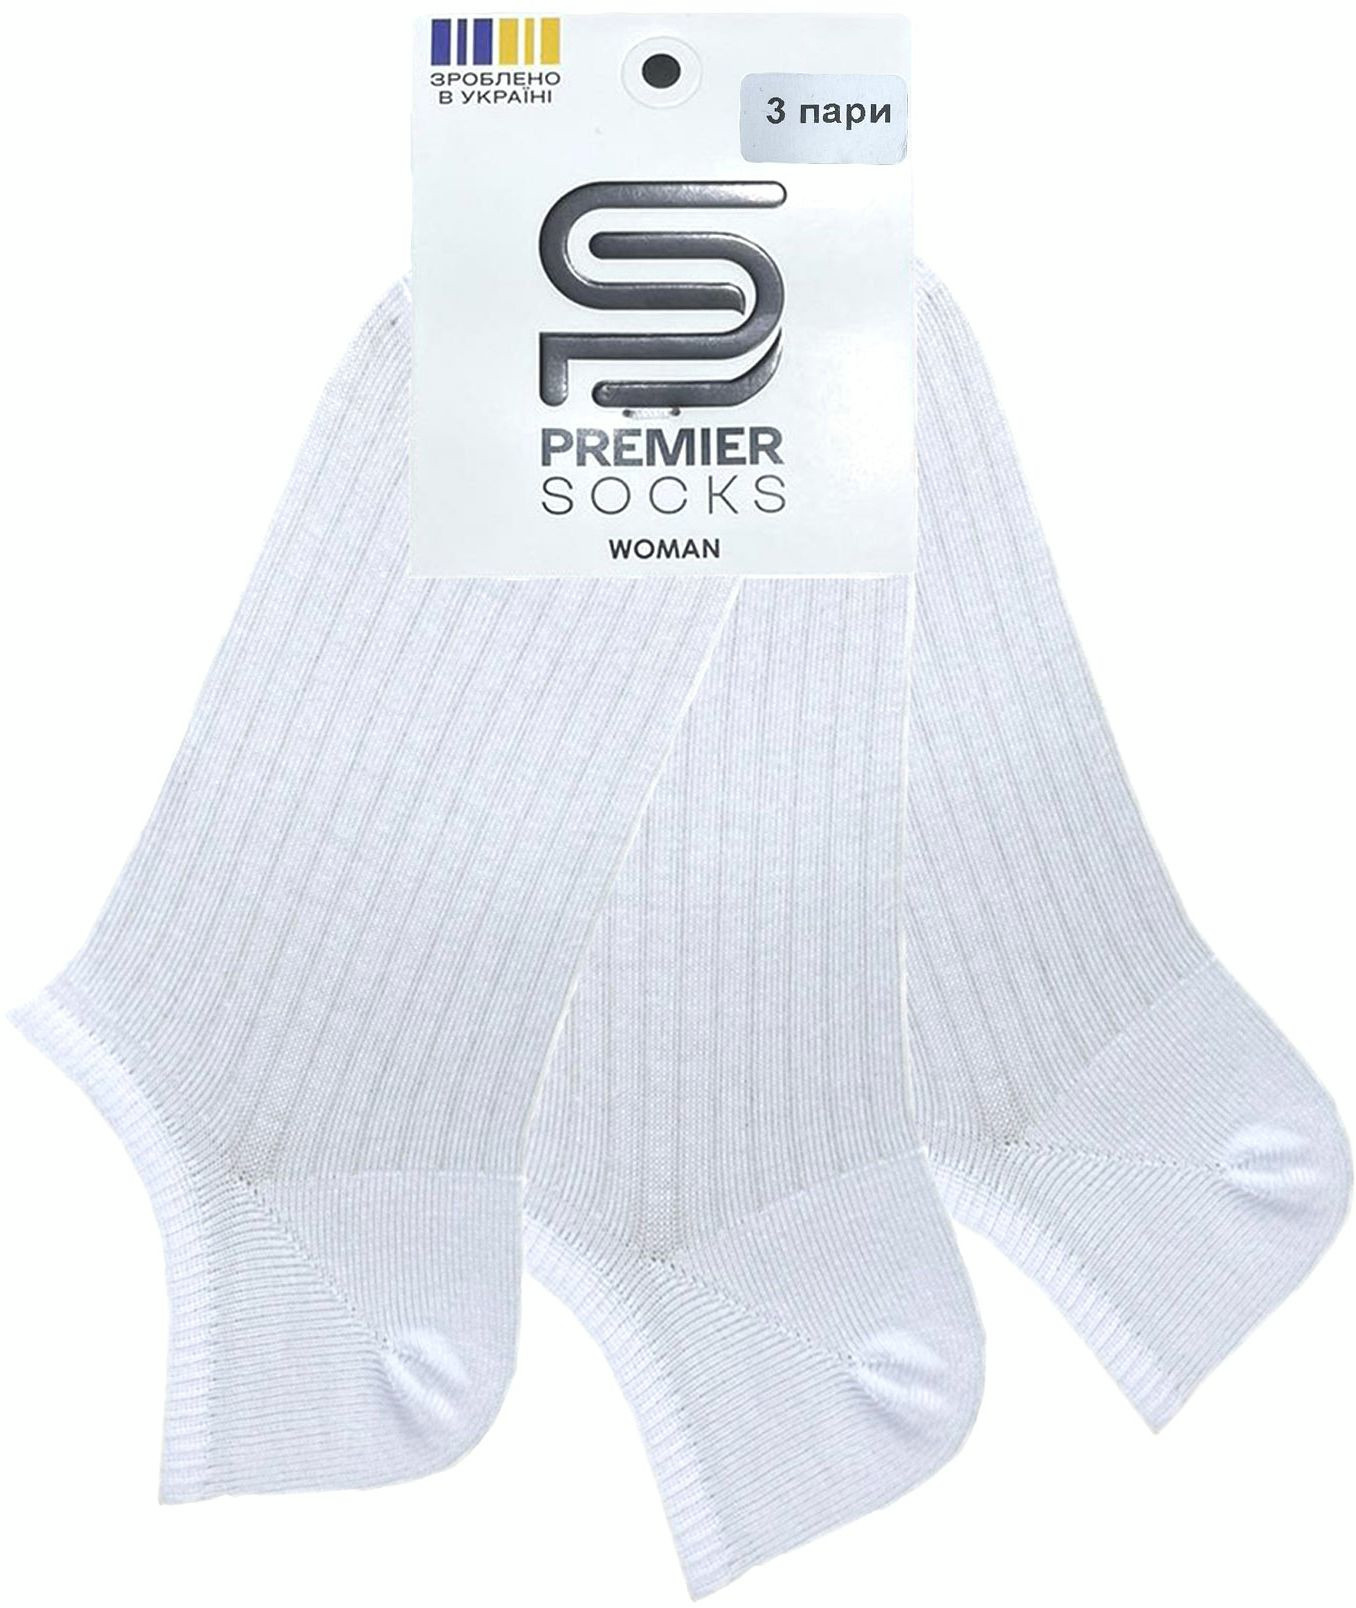 Набор носков женских Premier Socks 36-40 3 пары белые (4820163319308) фото 3